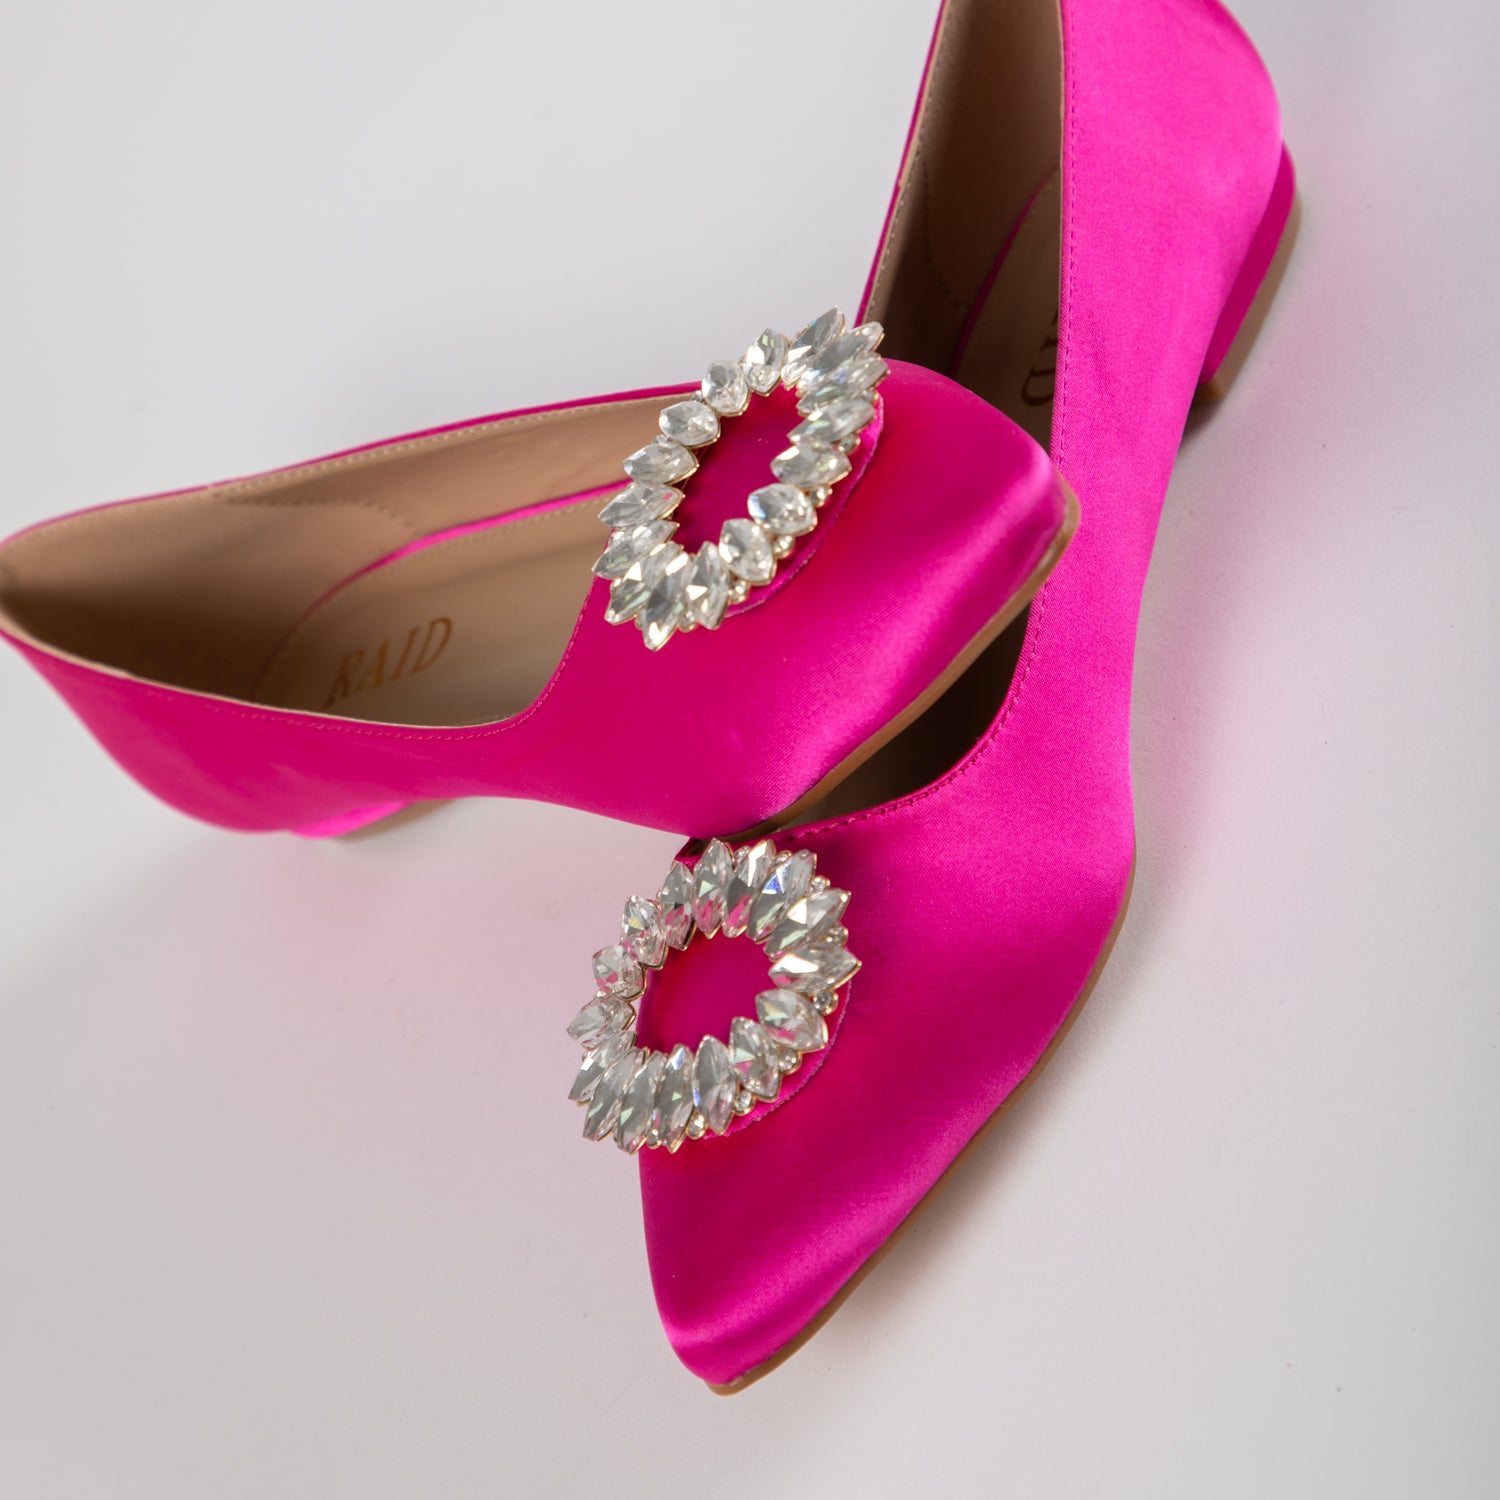 RAID Jennika Flat Shoe in Pink Satin